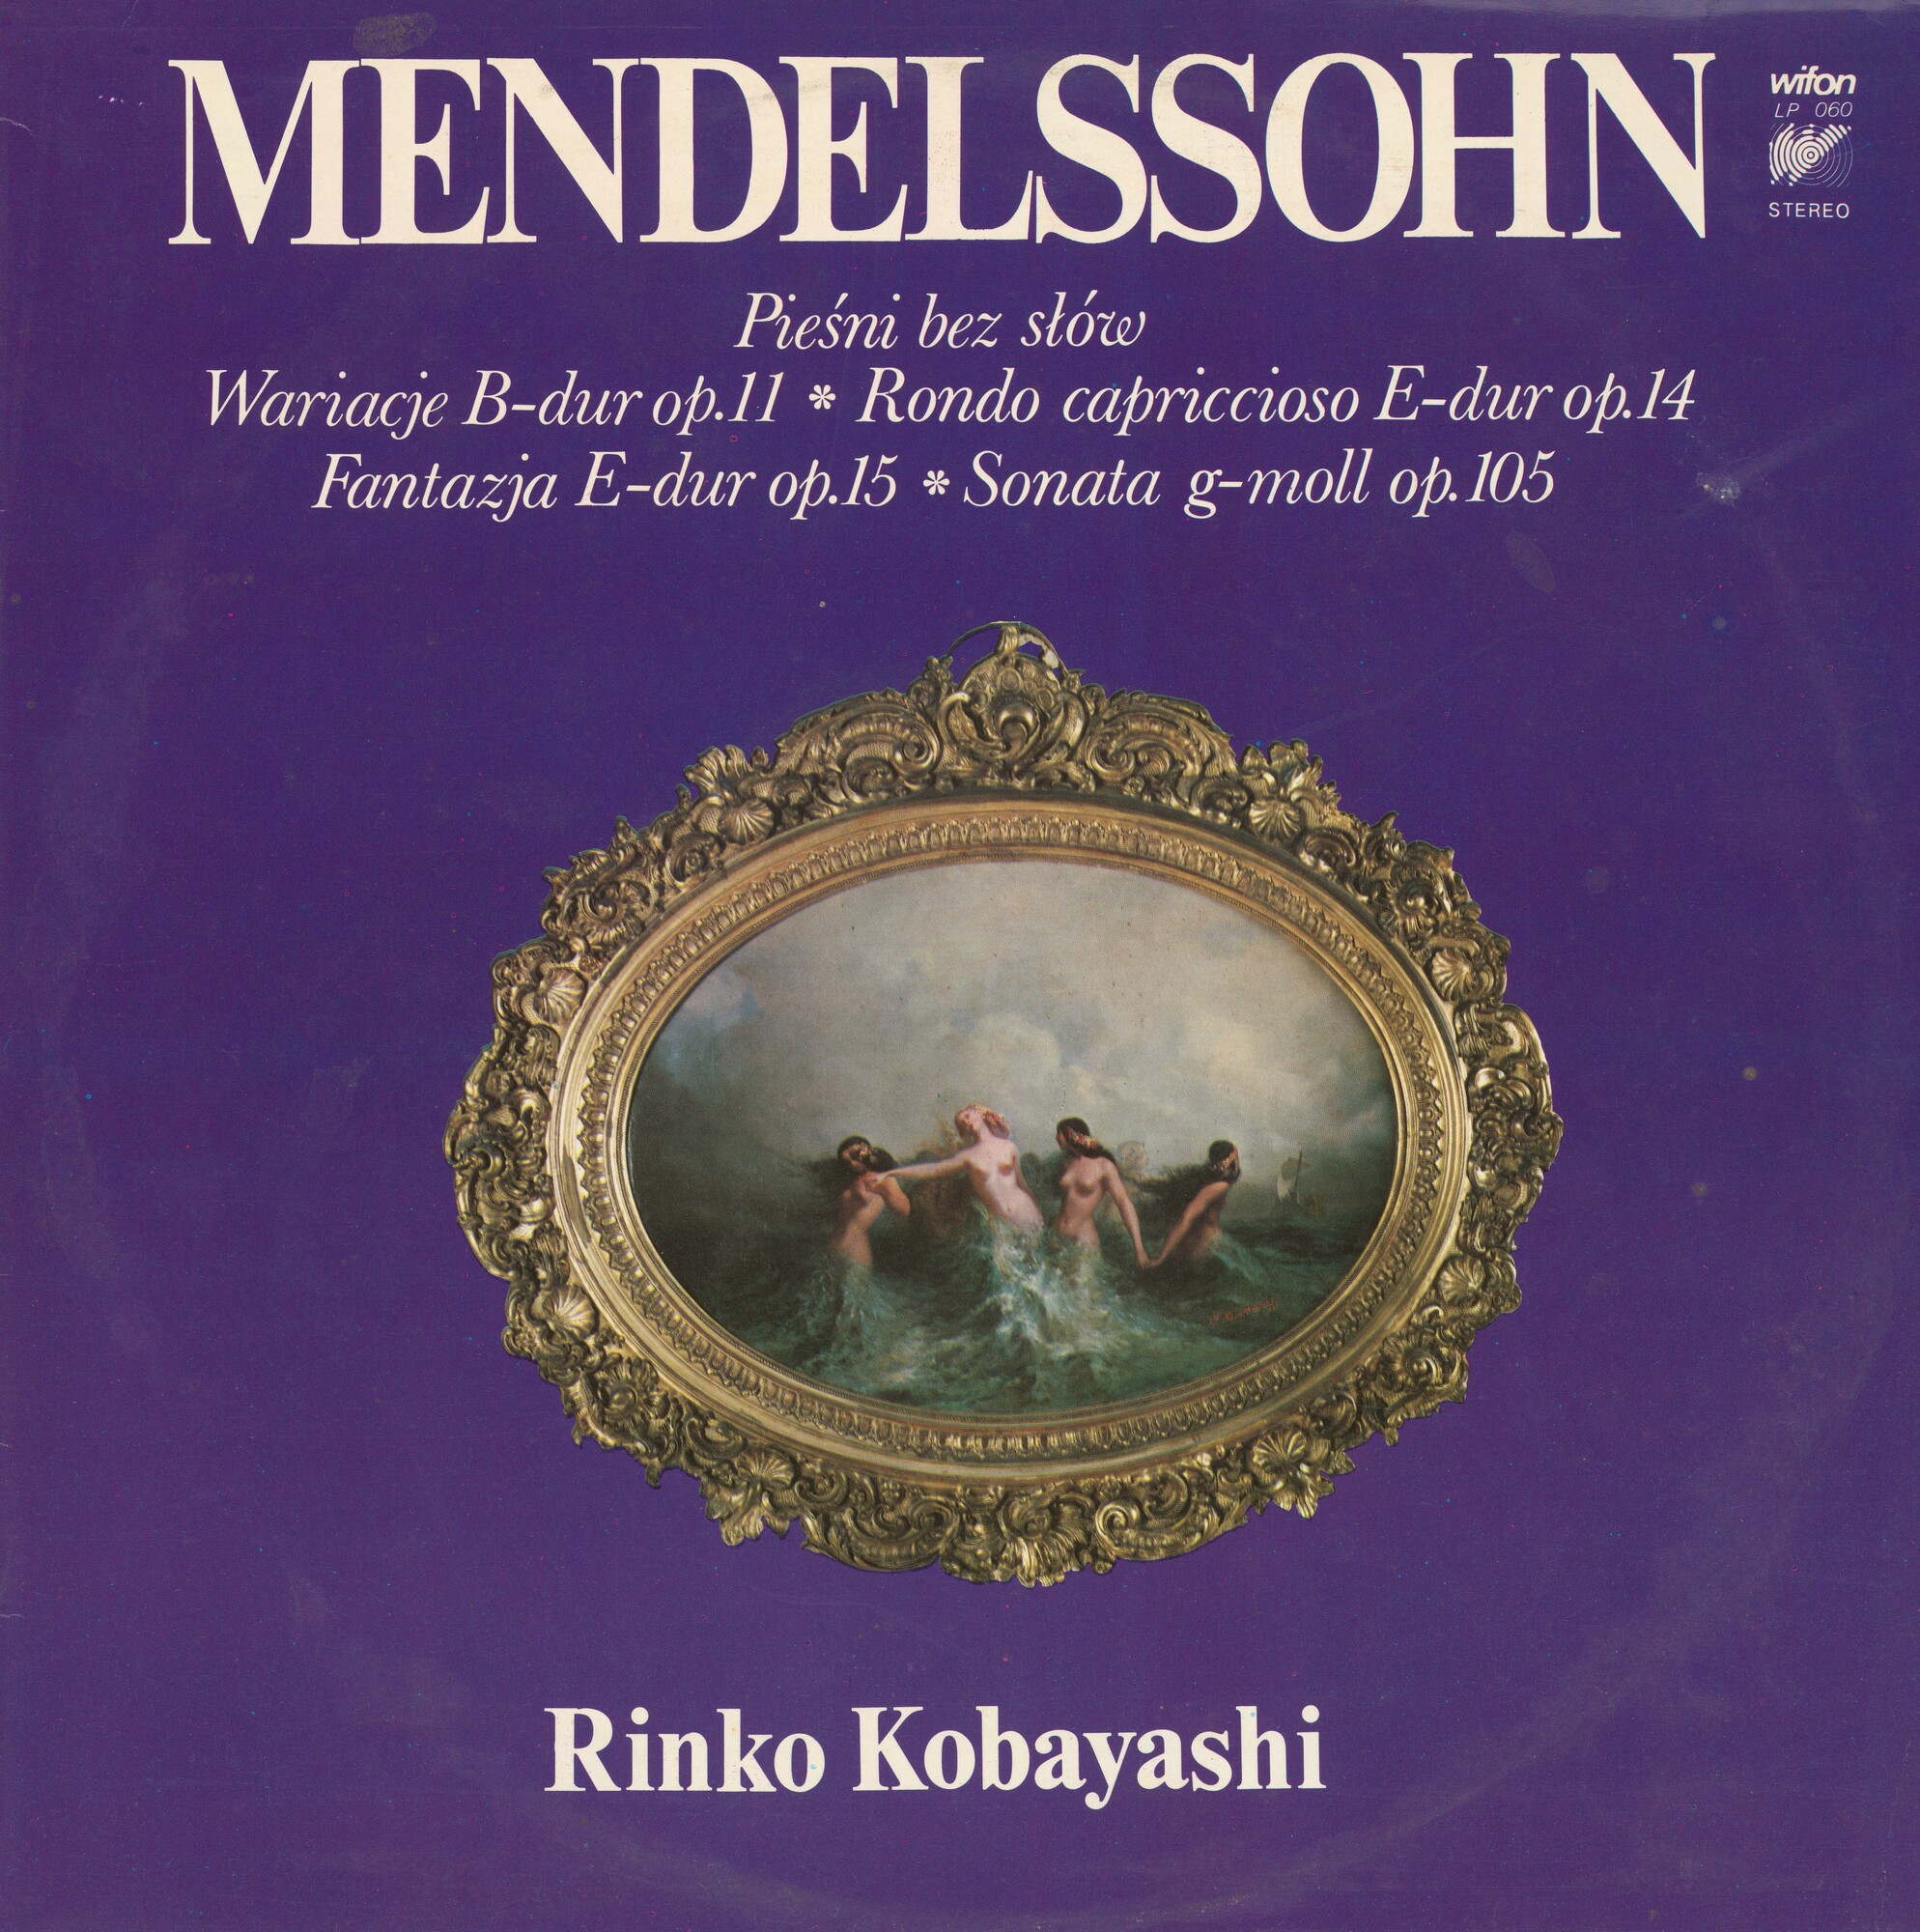 Mendelssohn - Rinko Kobayashi [по заказу польской фирмы WIFON, LP 060]